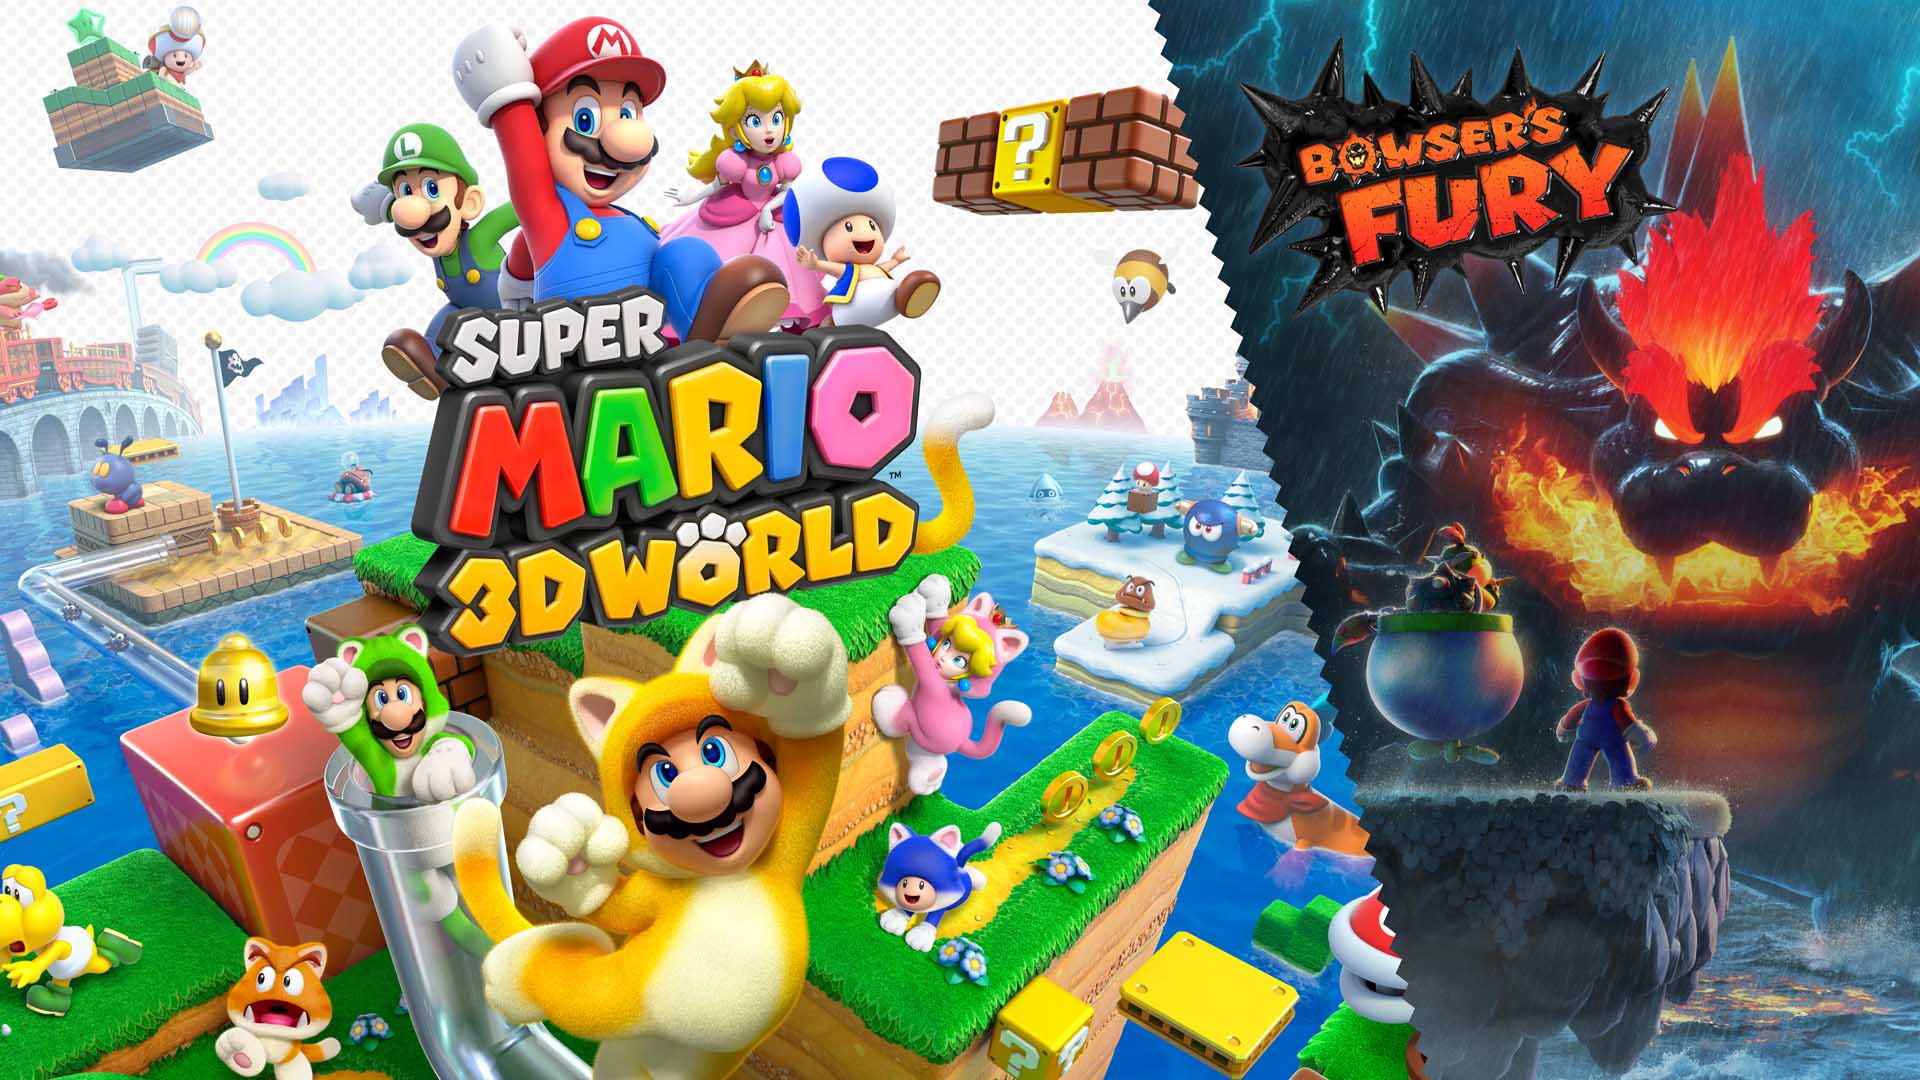 Super Mario 3d World Plus Bowsers Fury 2 13 m. 2021 d. 1